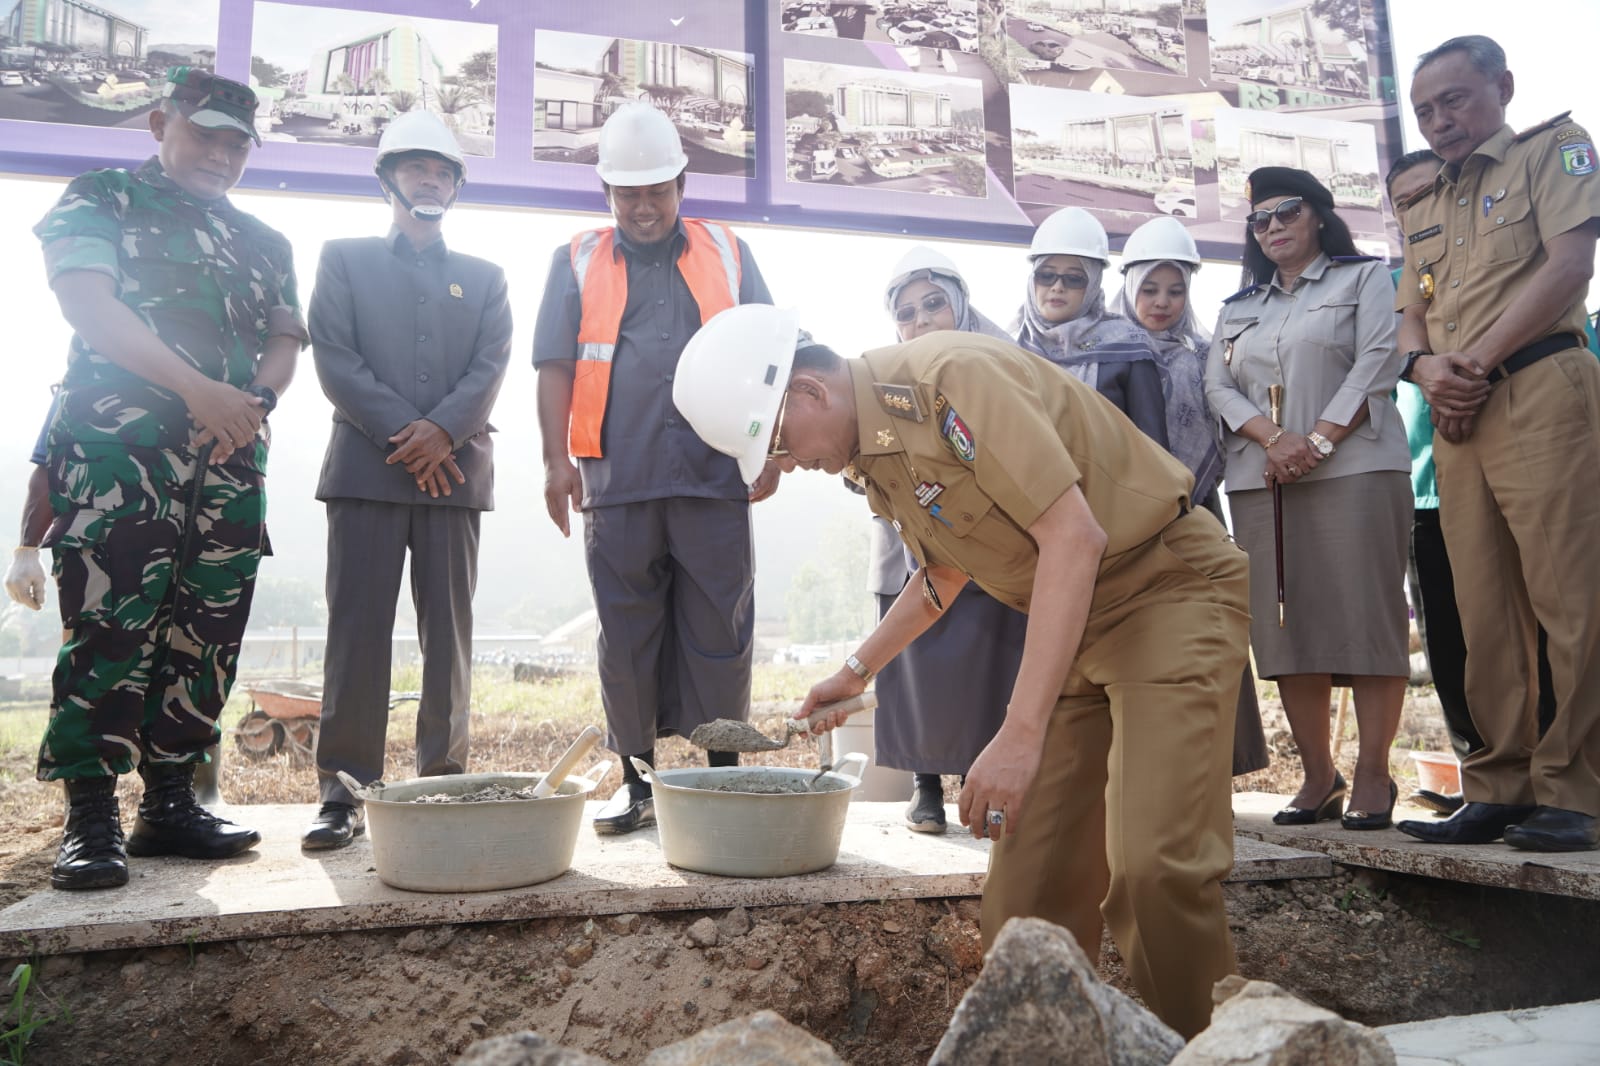 Pj Bupati Pringsewu: Sebelum Mendirikan Bangunan Lengkapi Dulu Persyaratannya